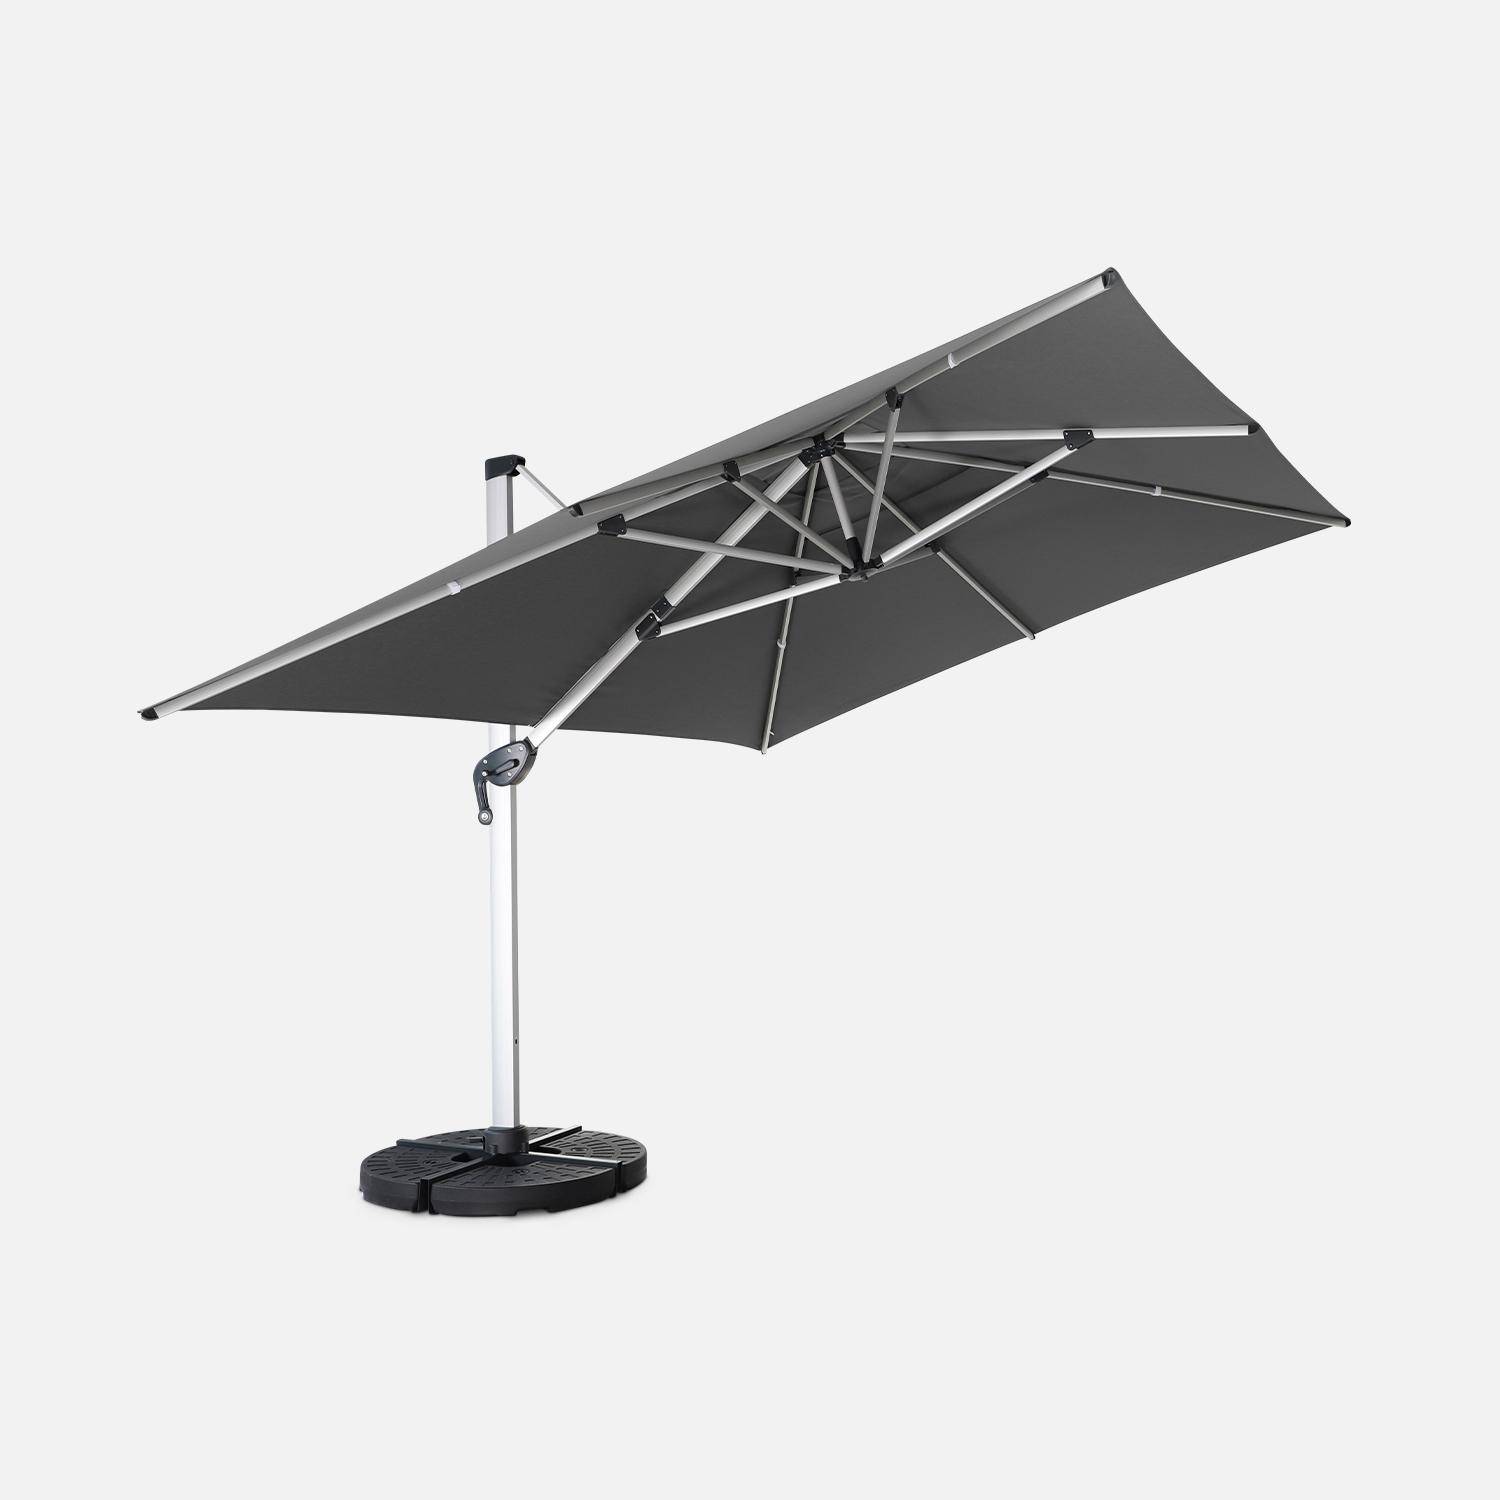 Topkwaliteit parasol, 3x4m, grijs polyester doek, geanodiseerd aluminium frame, hoes inbegrepen Photo3